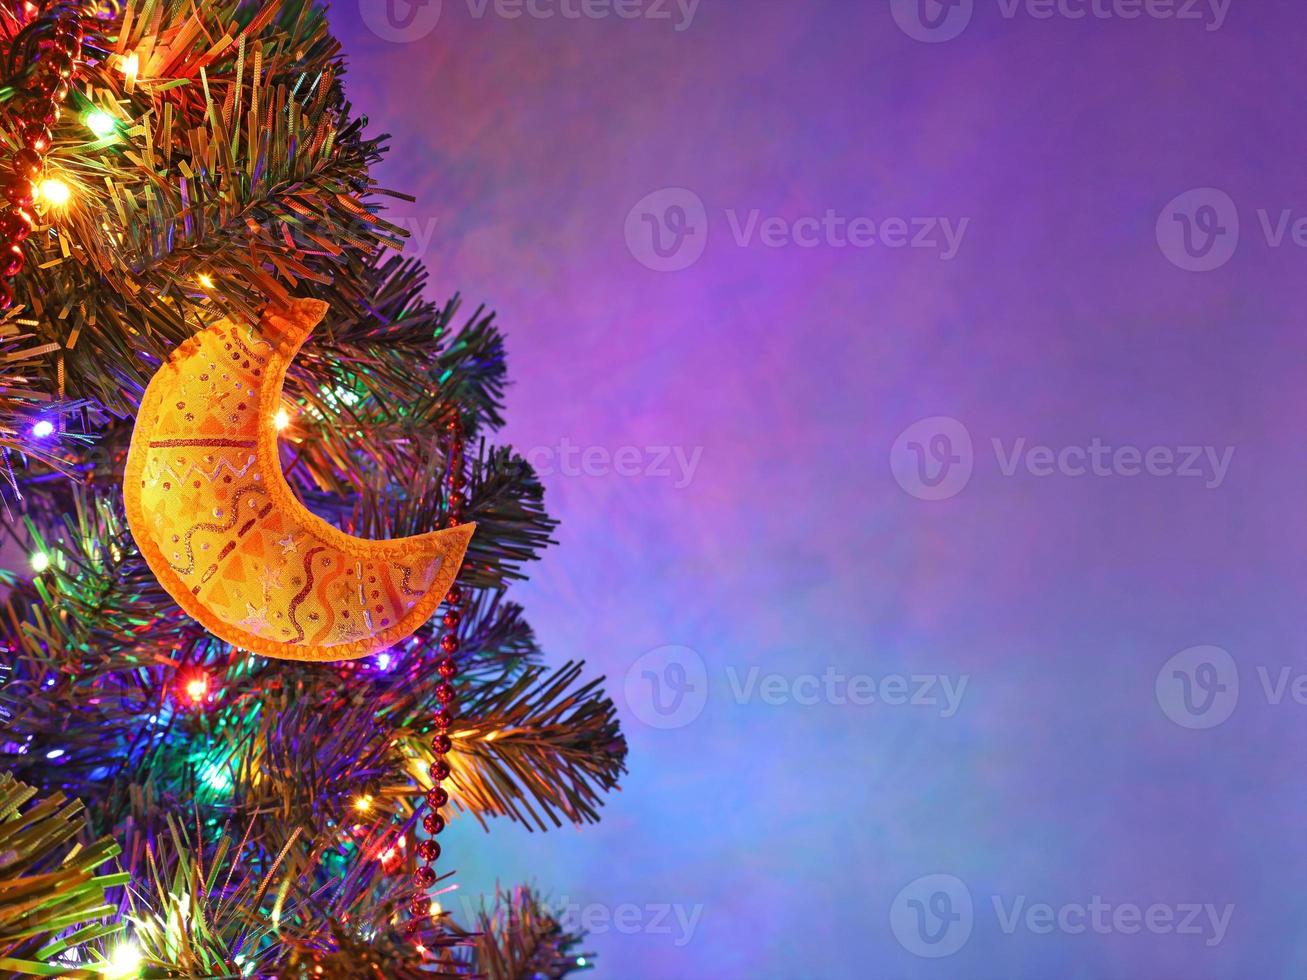 decoración navideña hecha a mano luna amarilla con adorno en abeto en la noche festiva, guirnalda de colores, cuentas rojas, fondo púrpura borroso. tarjeta de felicitación navideña con espacio de copia. foto